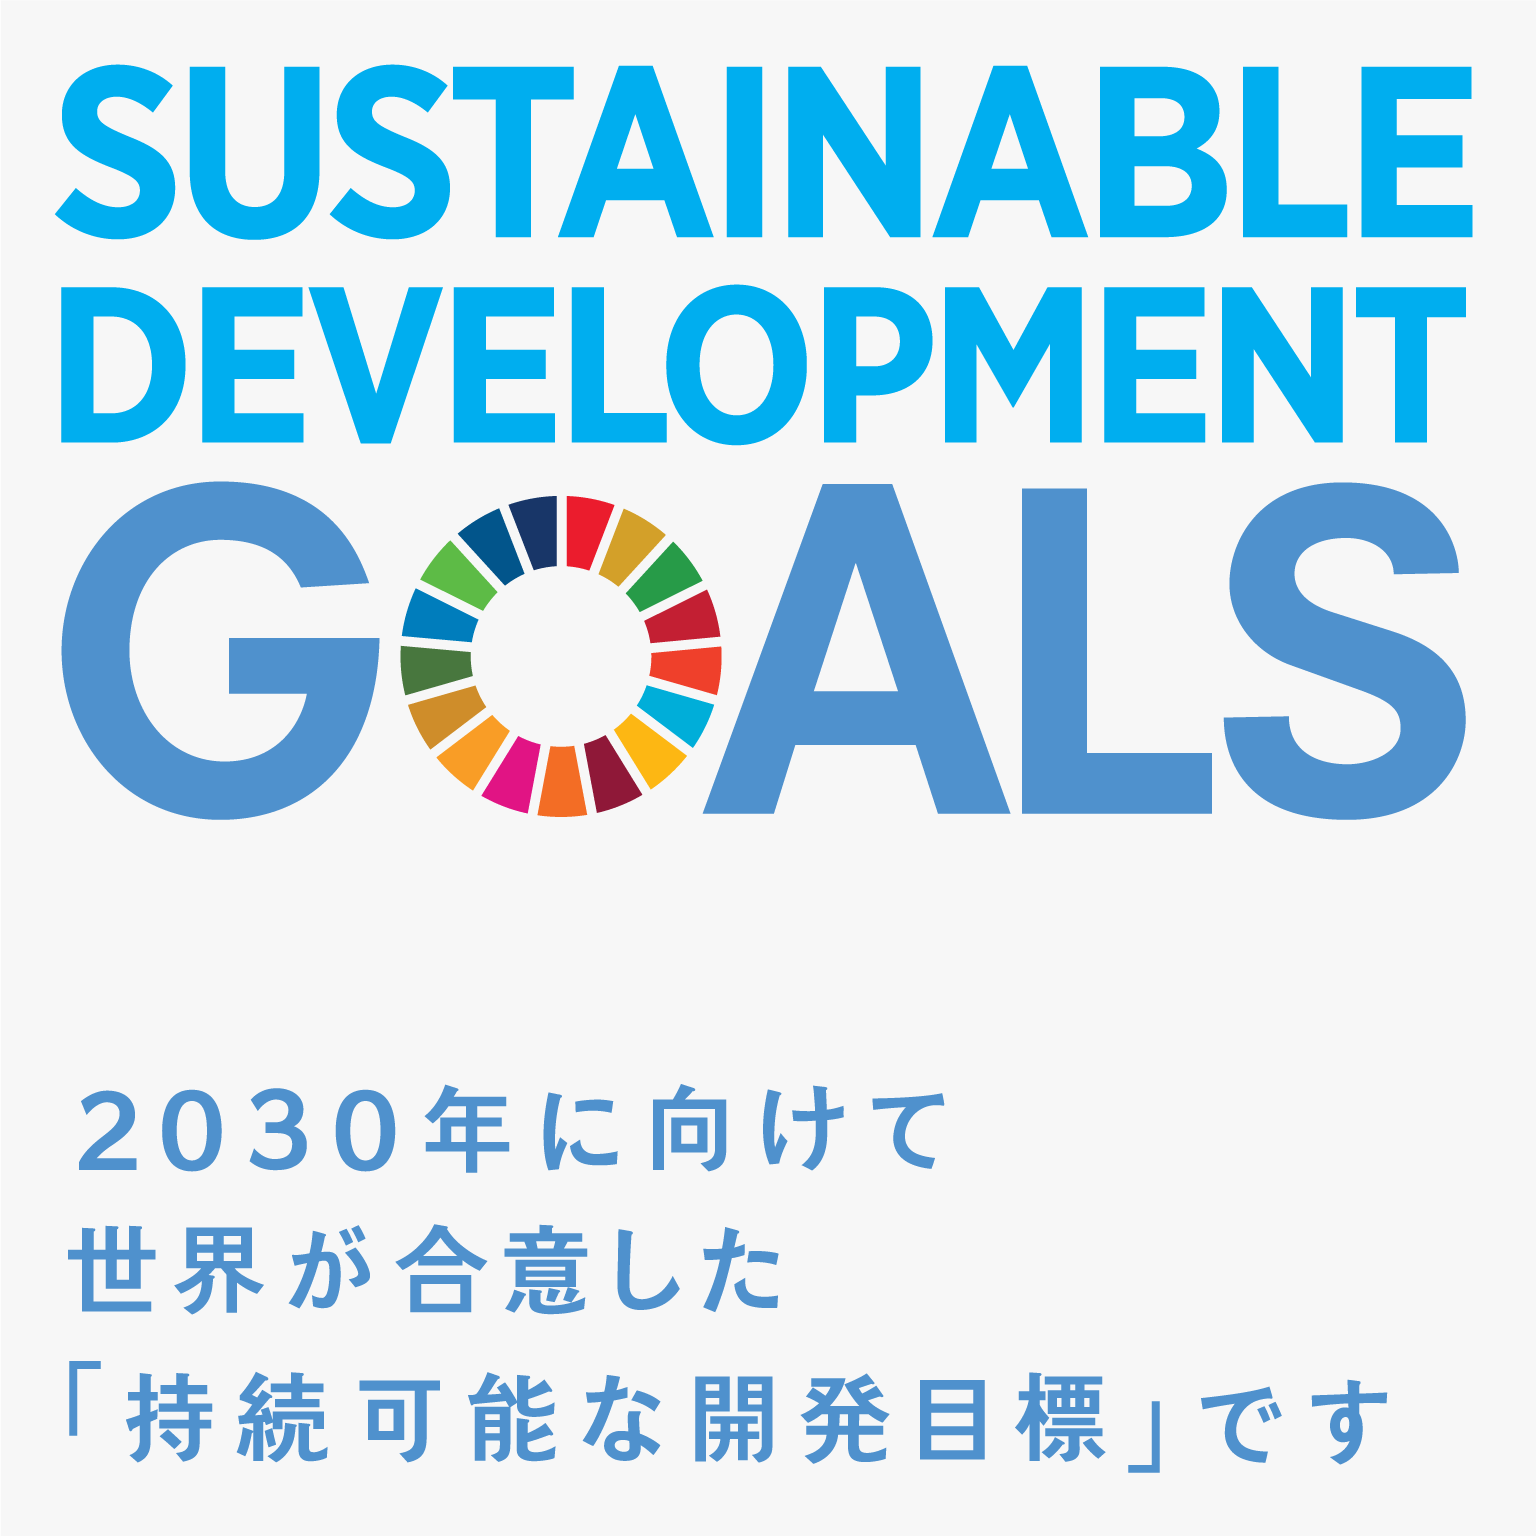 持続可能な開発目標ロゴ